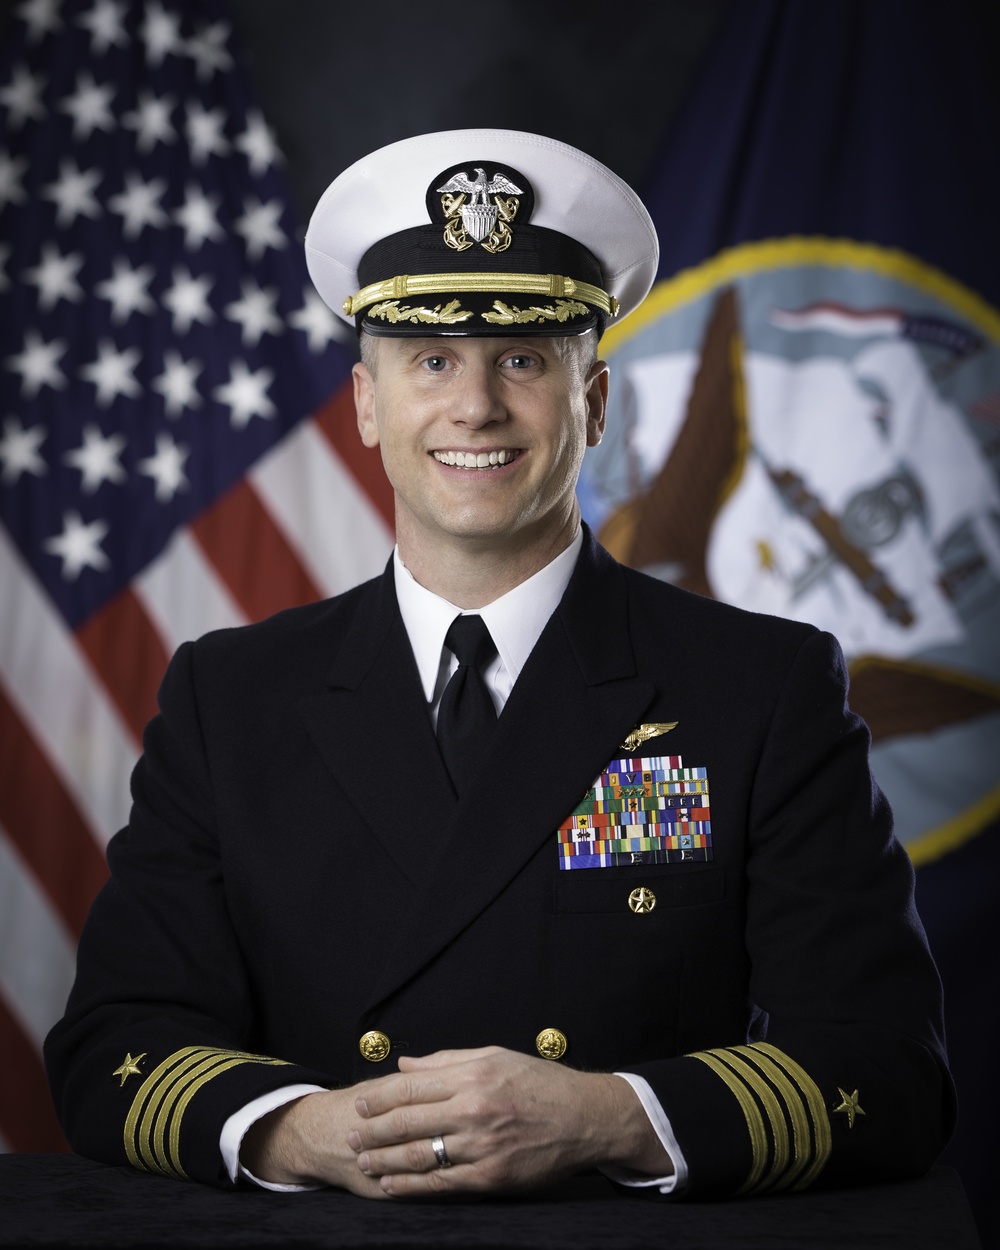 Official portrait of Commander, Fleet Activities Okinawa, Capt. Robert W. Mathewson, US Navy